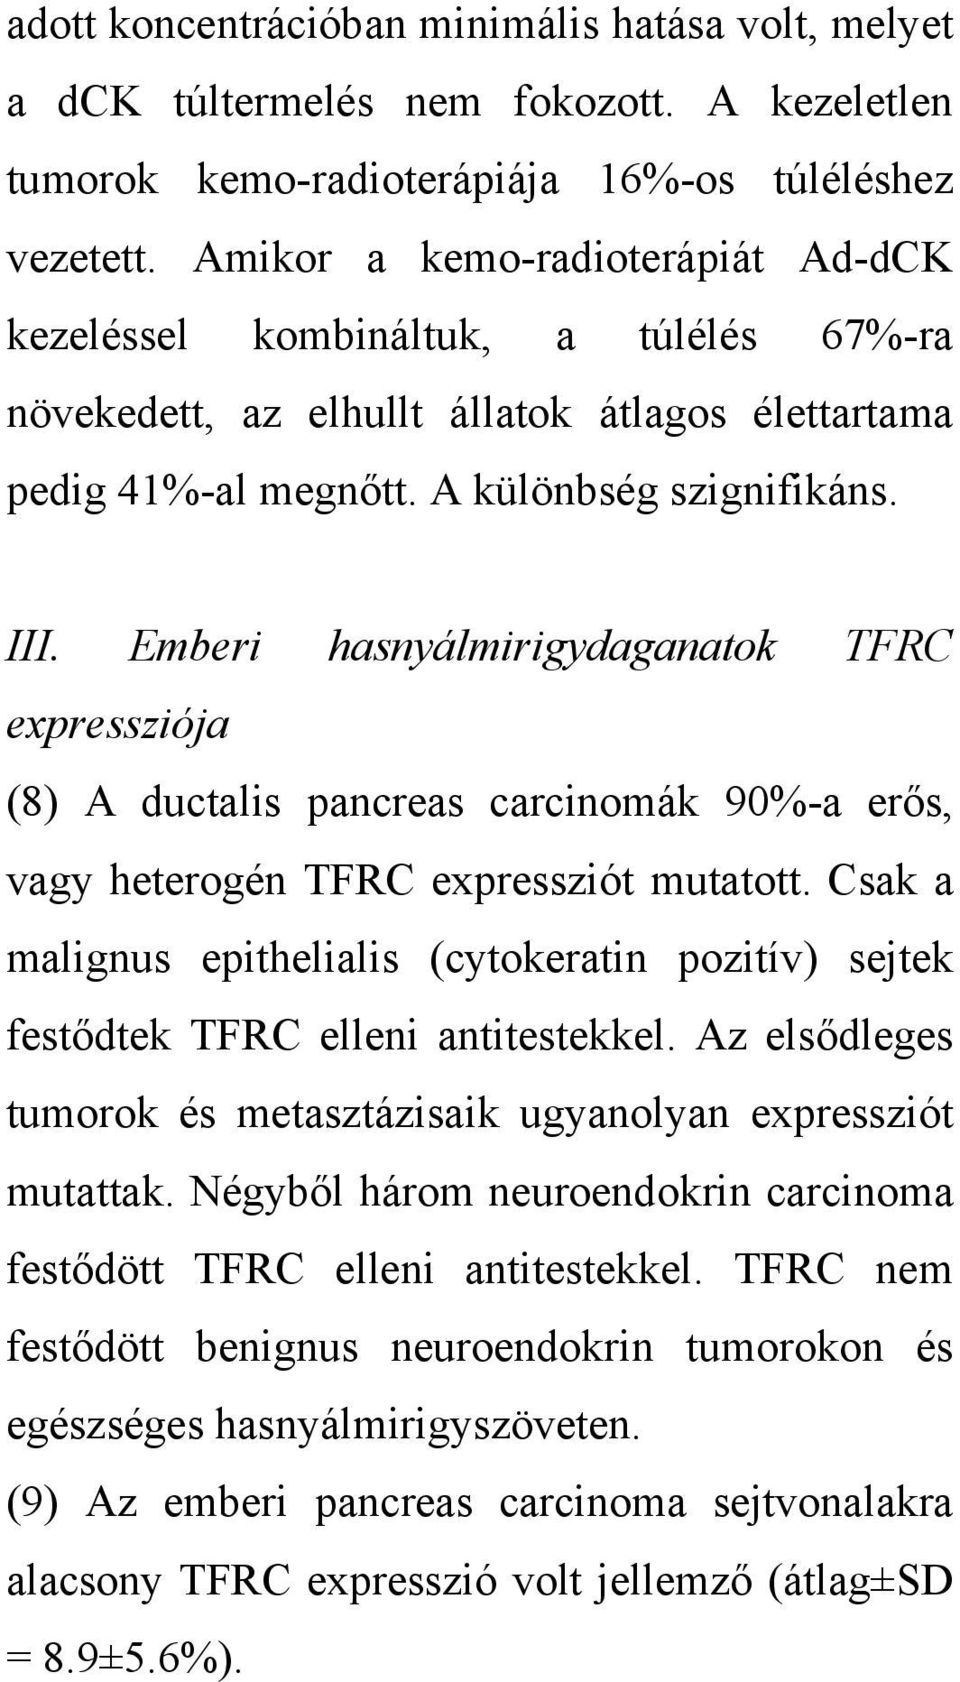 Emberi hasnyálmirigydaganatok TFRC expressziója (8) A ductalis pancreas carcinomák 90%-a erős, vagy heterogén TFRC expressziót mutatott.